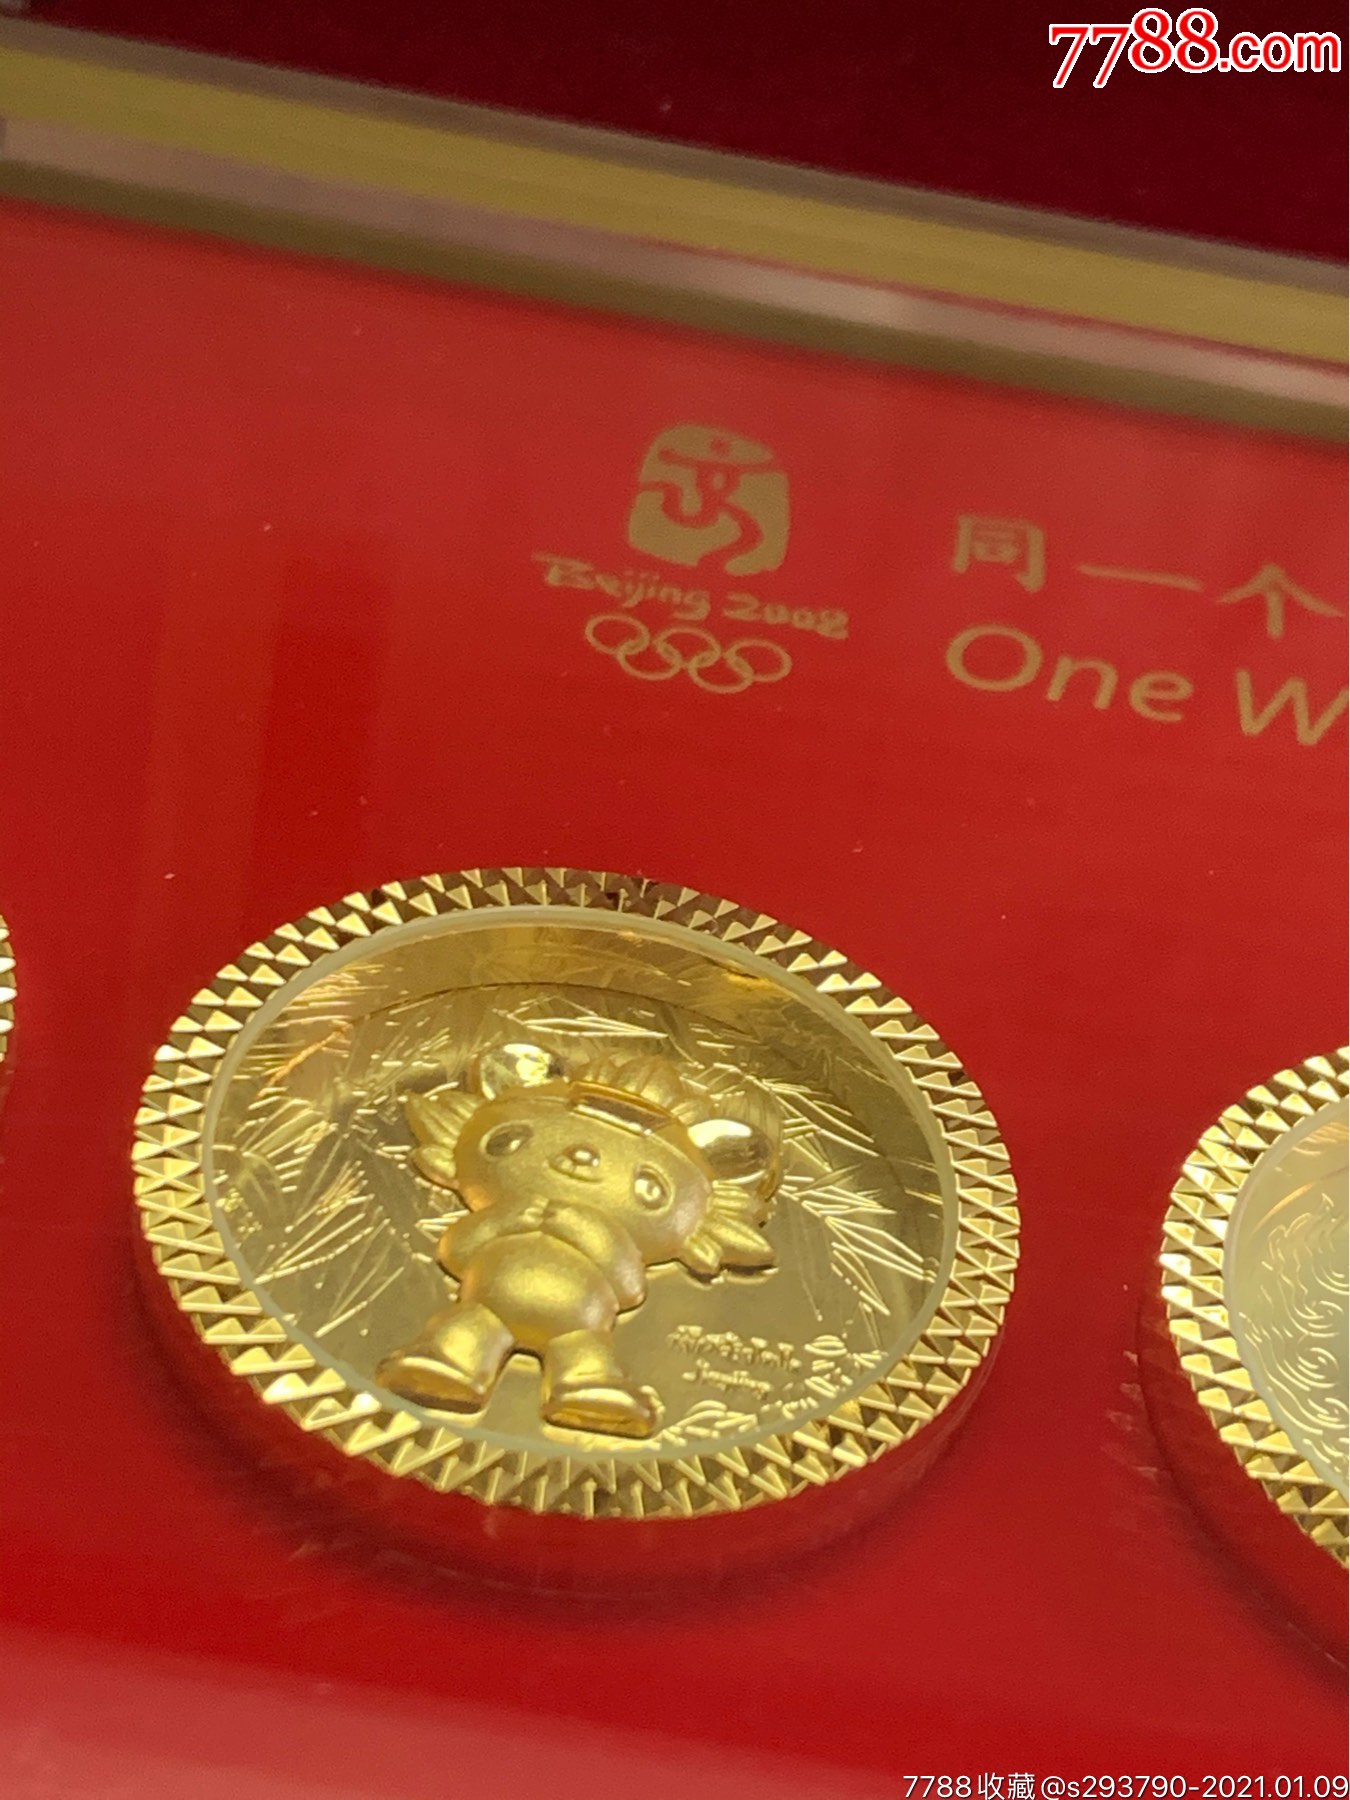 2008年北京奥运金质福娃纪念套章